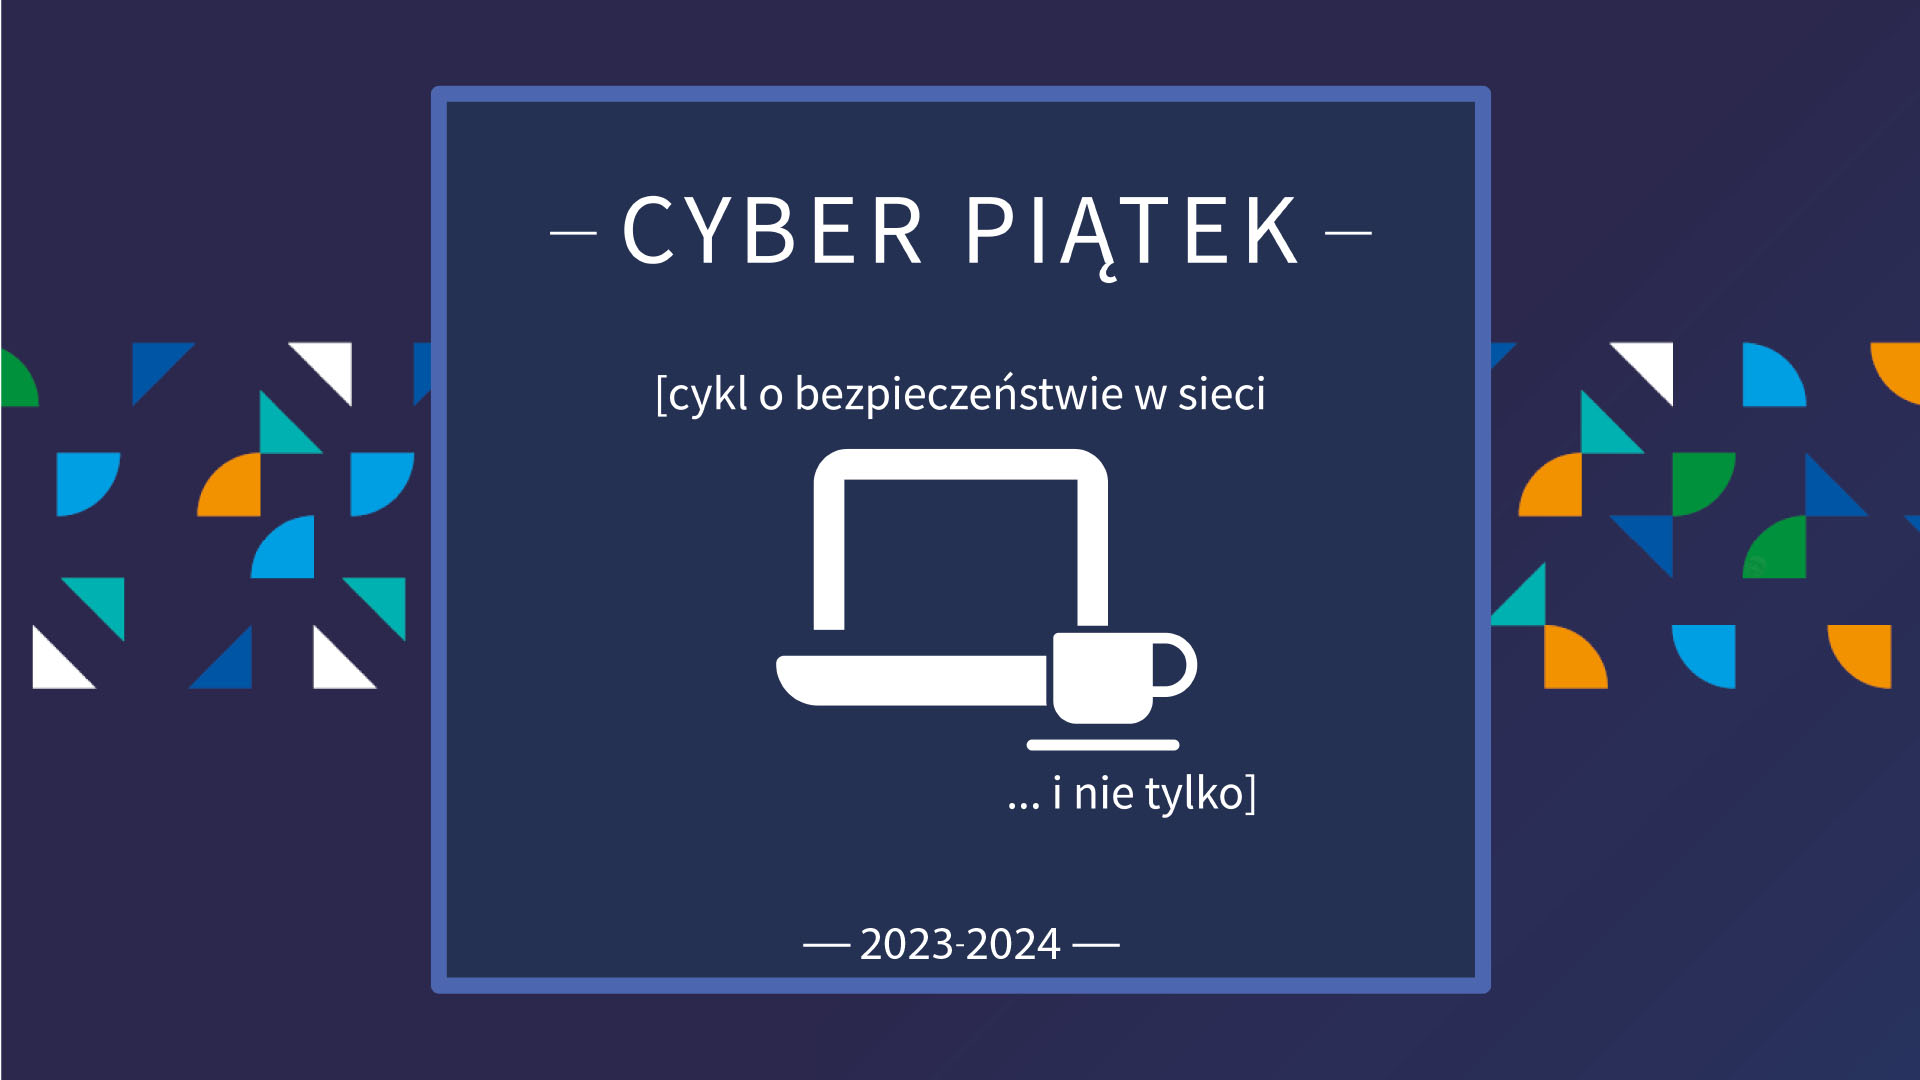 "Cyber piątek- (cykl o bezpieczeństwie w sieci... i nie tylko - 2023-2024". Ekran monitora, obok, w prawym narożniku filiżanka. - grafika artykułu